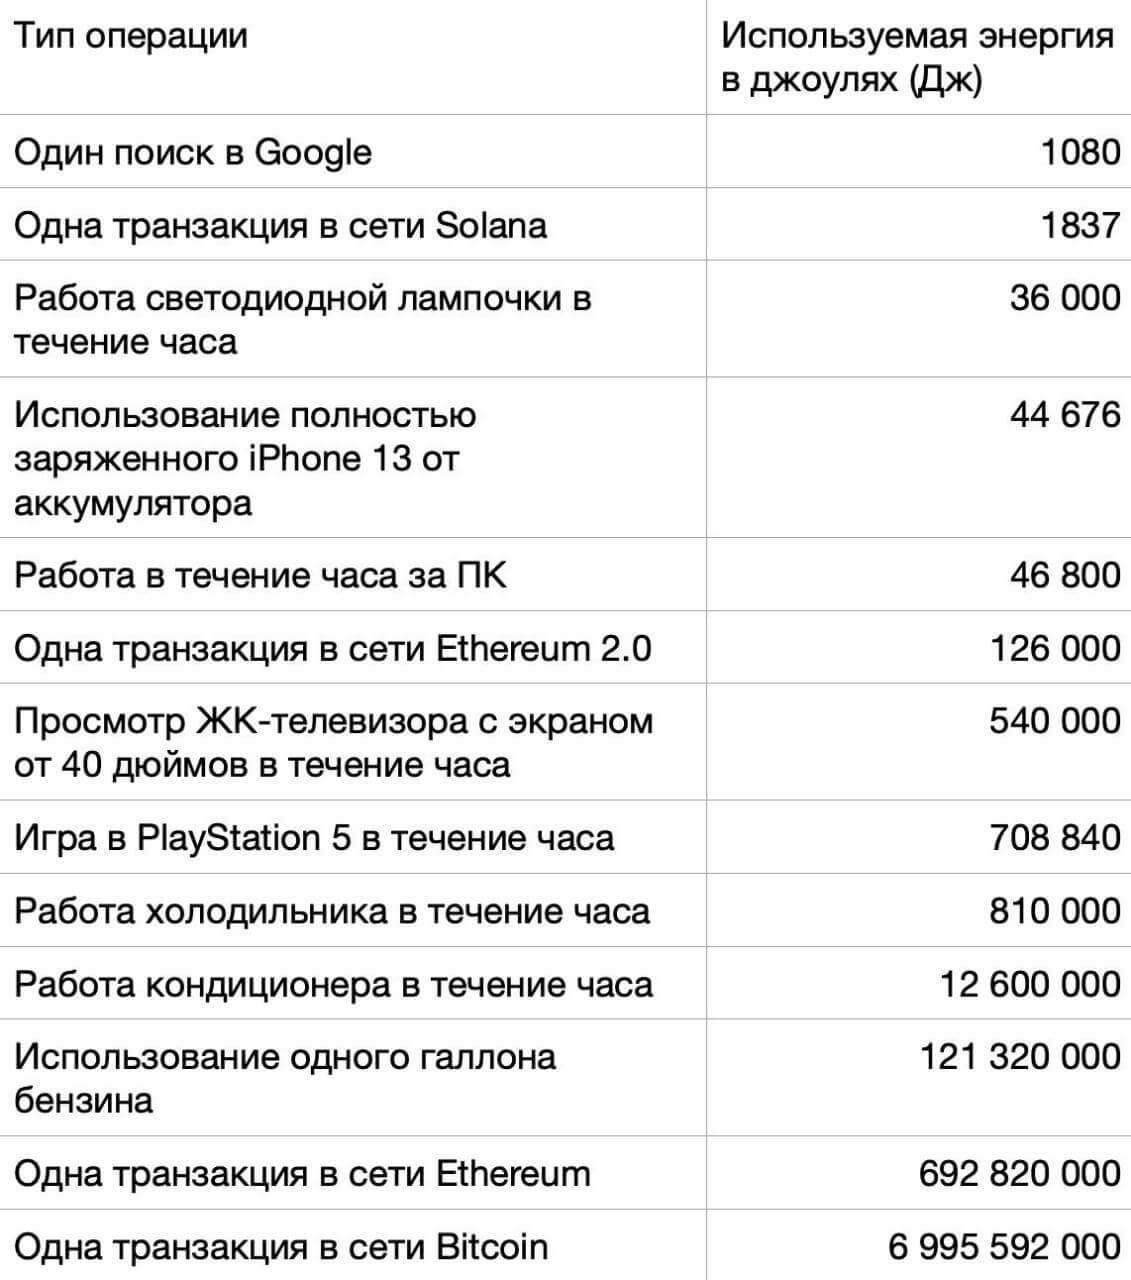 Казахстан стал второй страной в мире по масштабам добычи Биткоина. Как это сказывается на стране? Расходы на проведение транзакций в сети криптовалют. Фото.